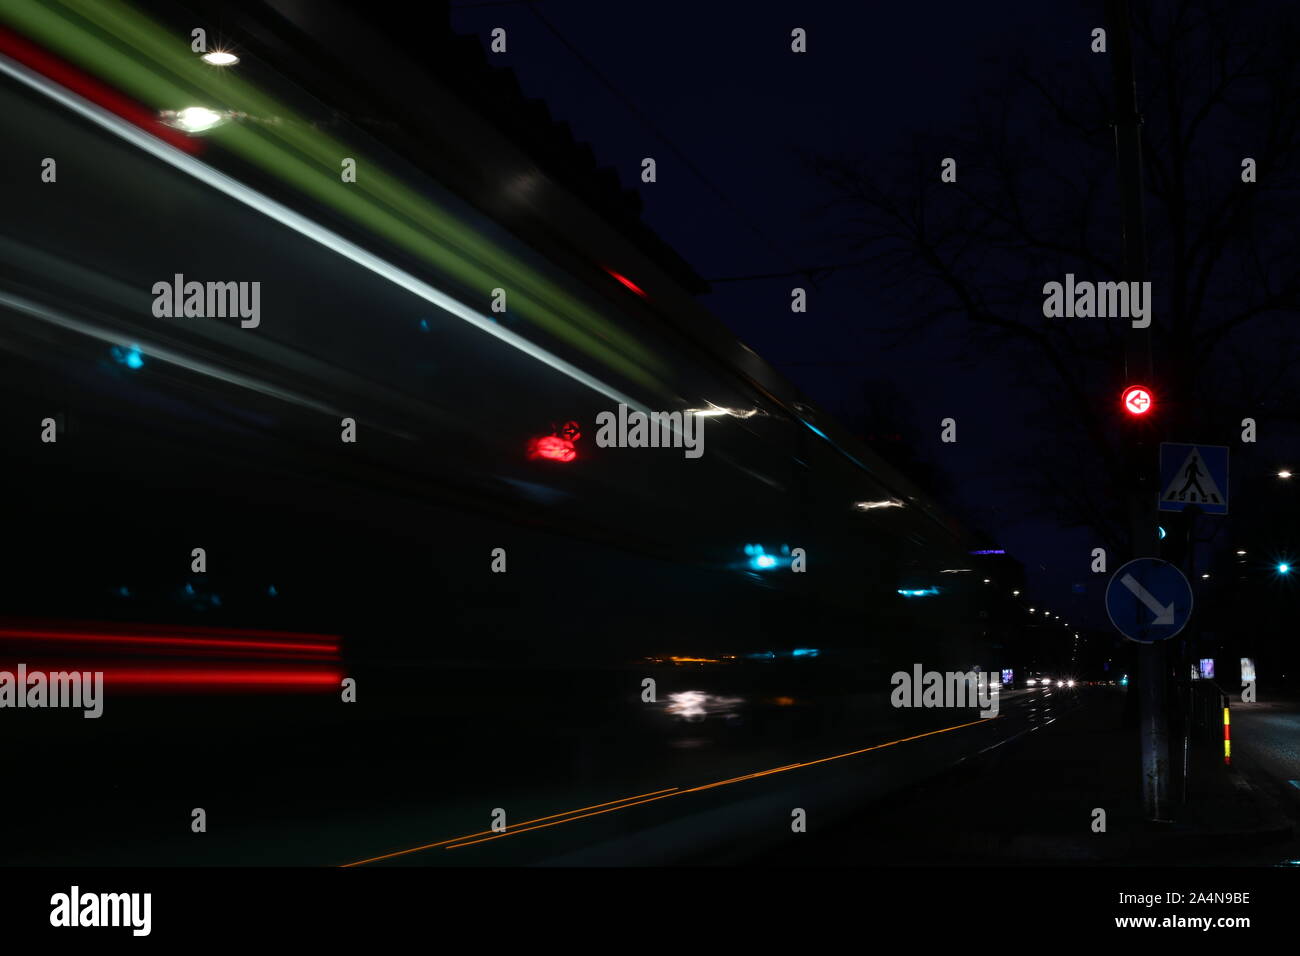 Abstract lunga esposizione foto delle luci della città di Helsinki durante la notte. Questa foto comprende lo spostamento di tram, vetture e alcuni semafori. Foto Stock